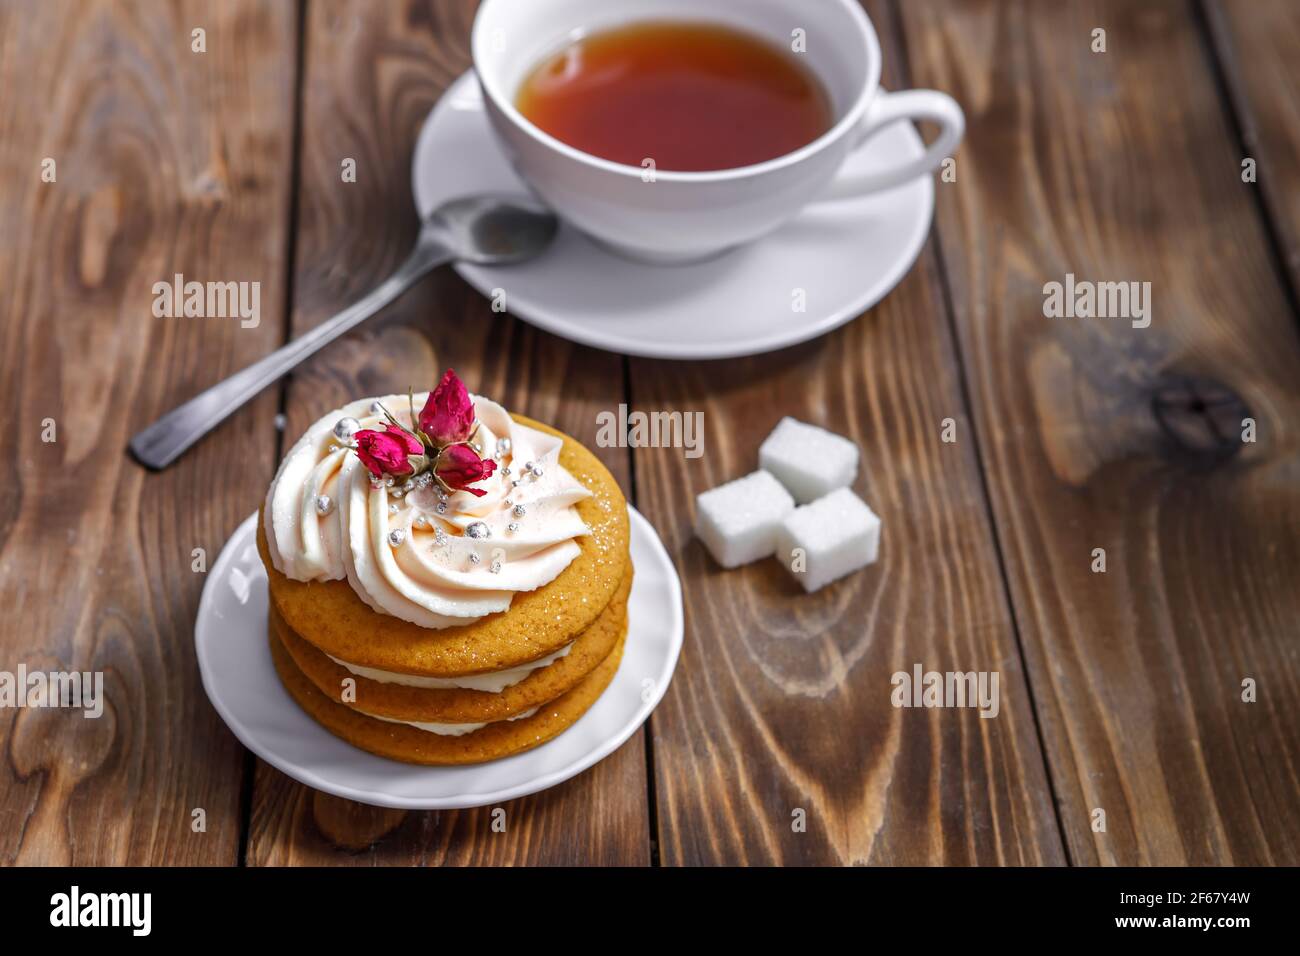 Biskuitkuchen mit Sahne, verziert mit kleinen Blumen und einer Tasse Tee. Das Konzept eines festlichen Leckerbissen. Handarbeit Stockfoto